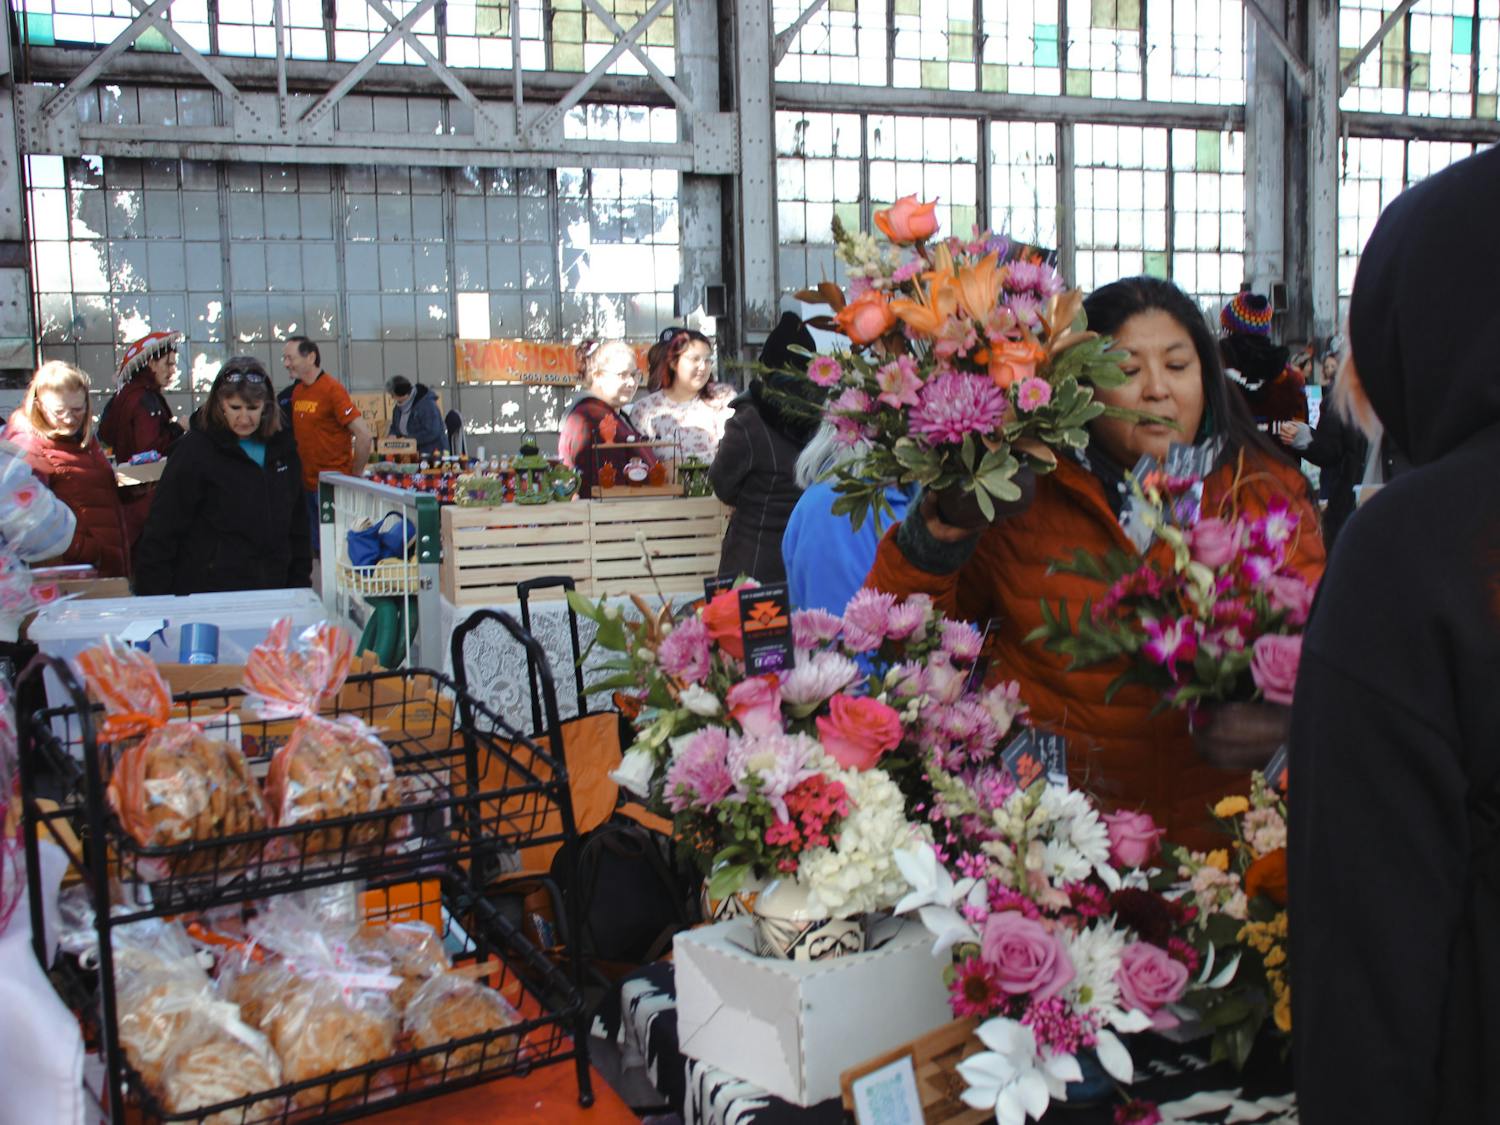 PHOTO STORY: Rail Yards Valentine Market